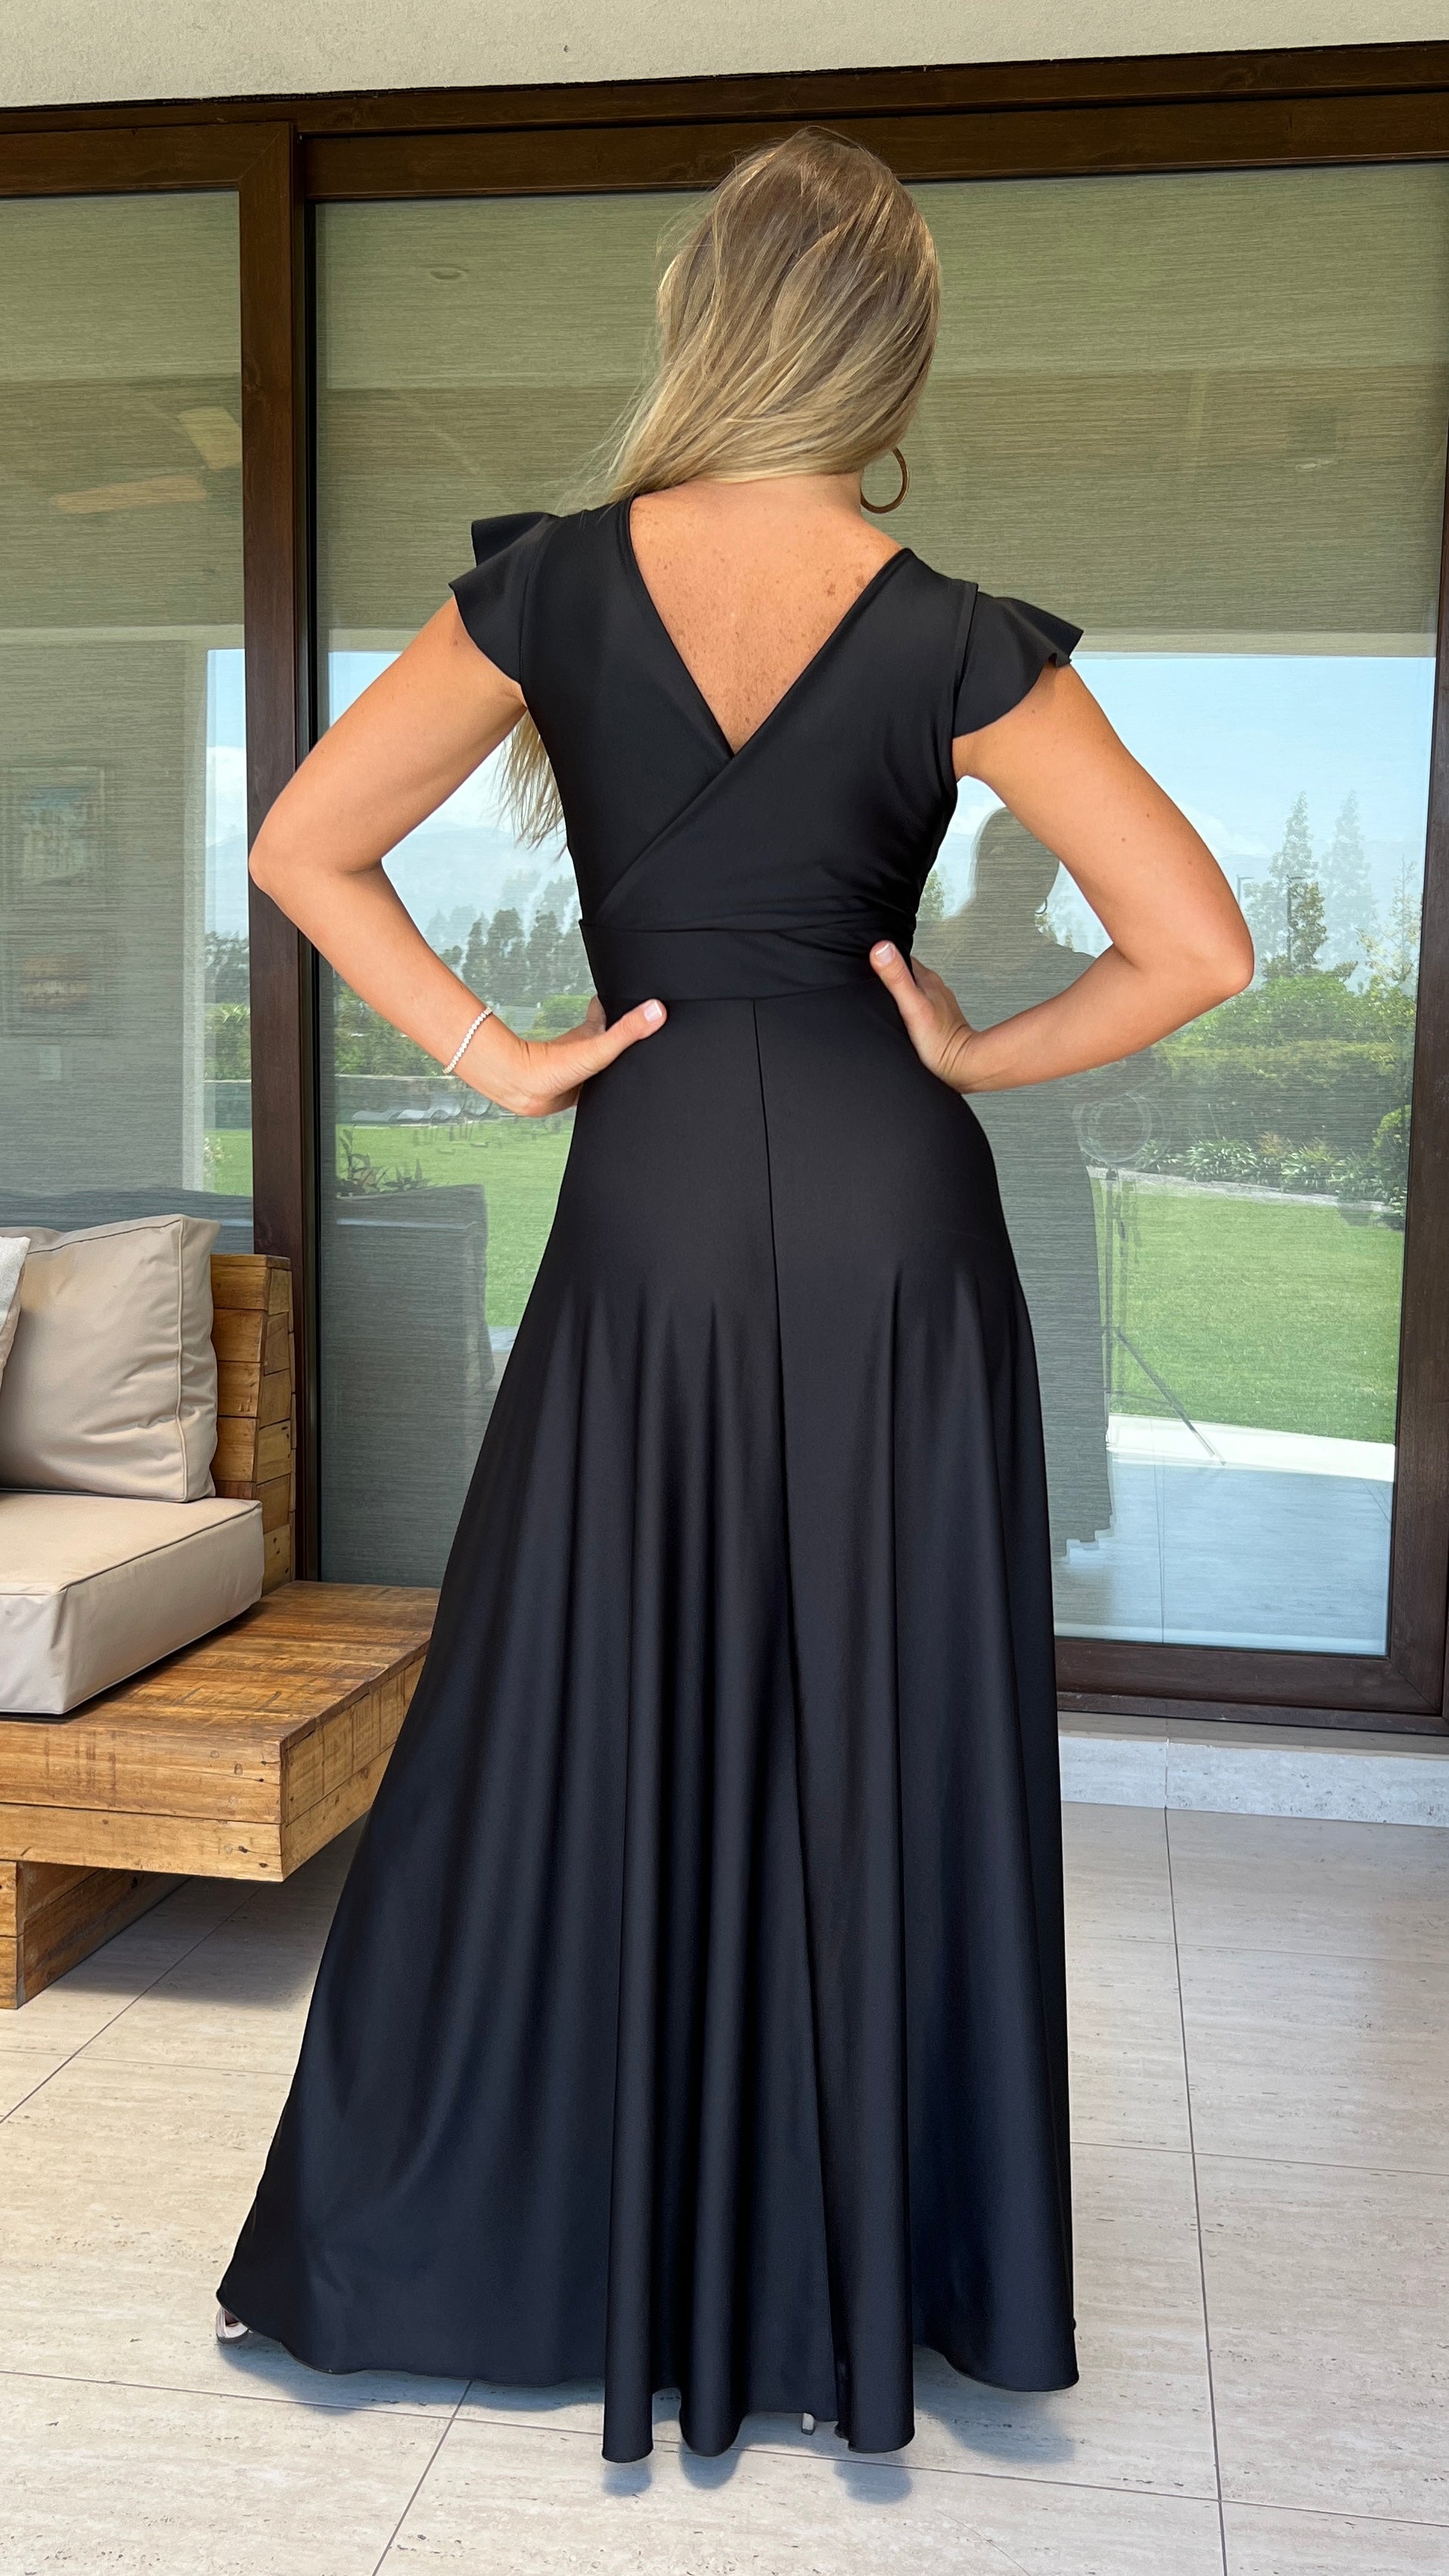 Vestido Isabella Dupont Negro| Vestido Fiesta Negro| Vestido Largo Noche Negro| Amoramar.cl 1